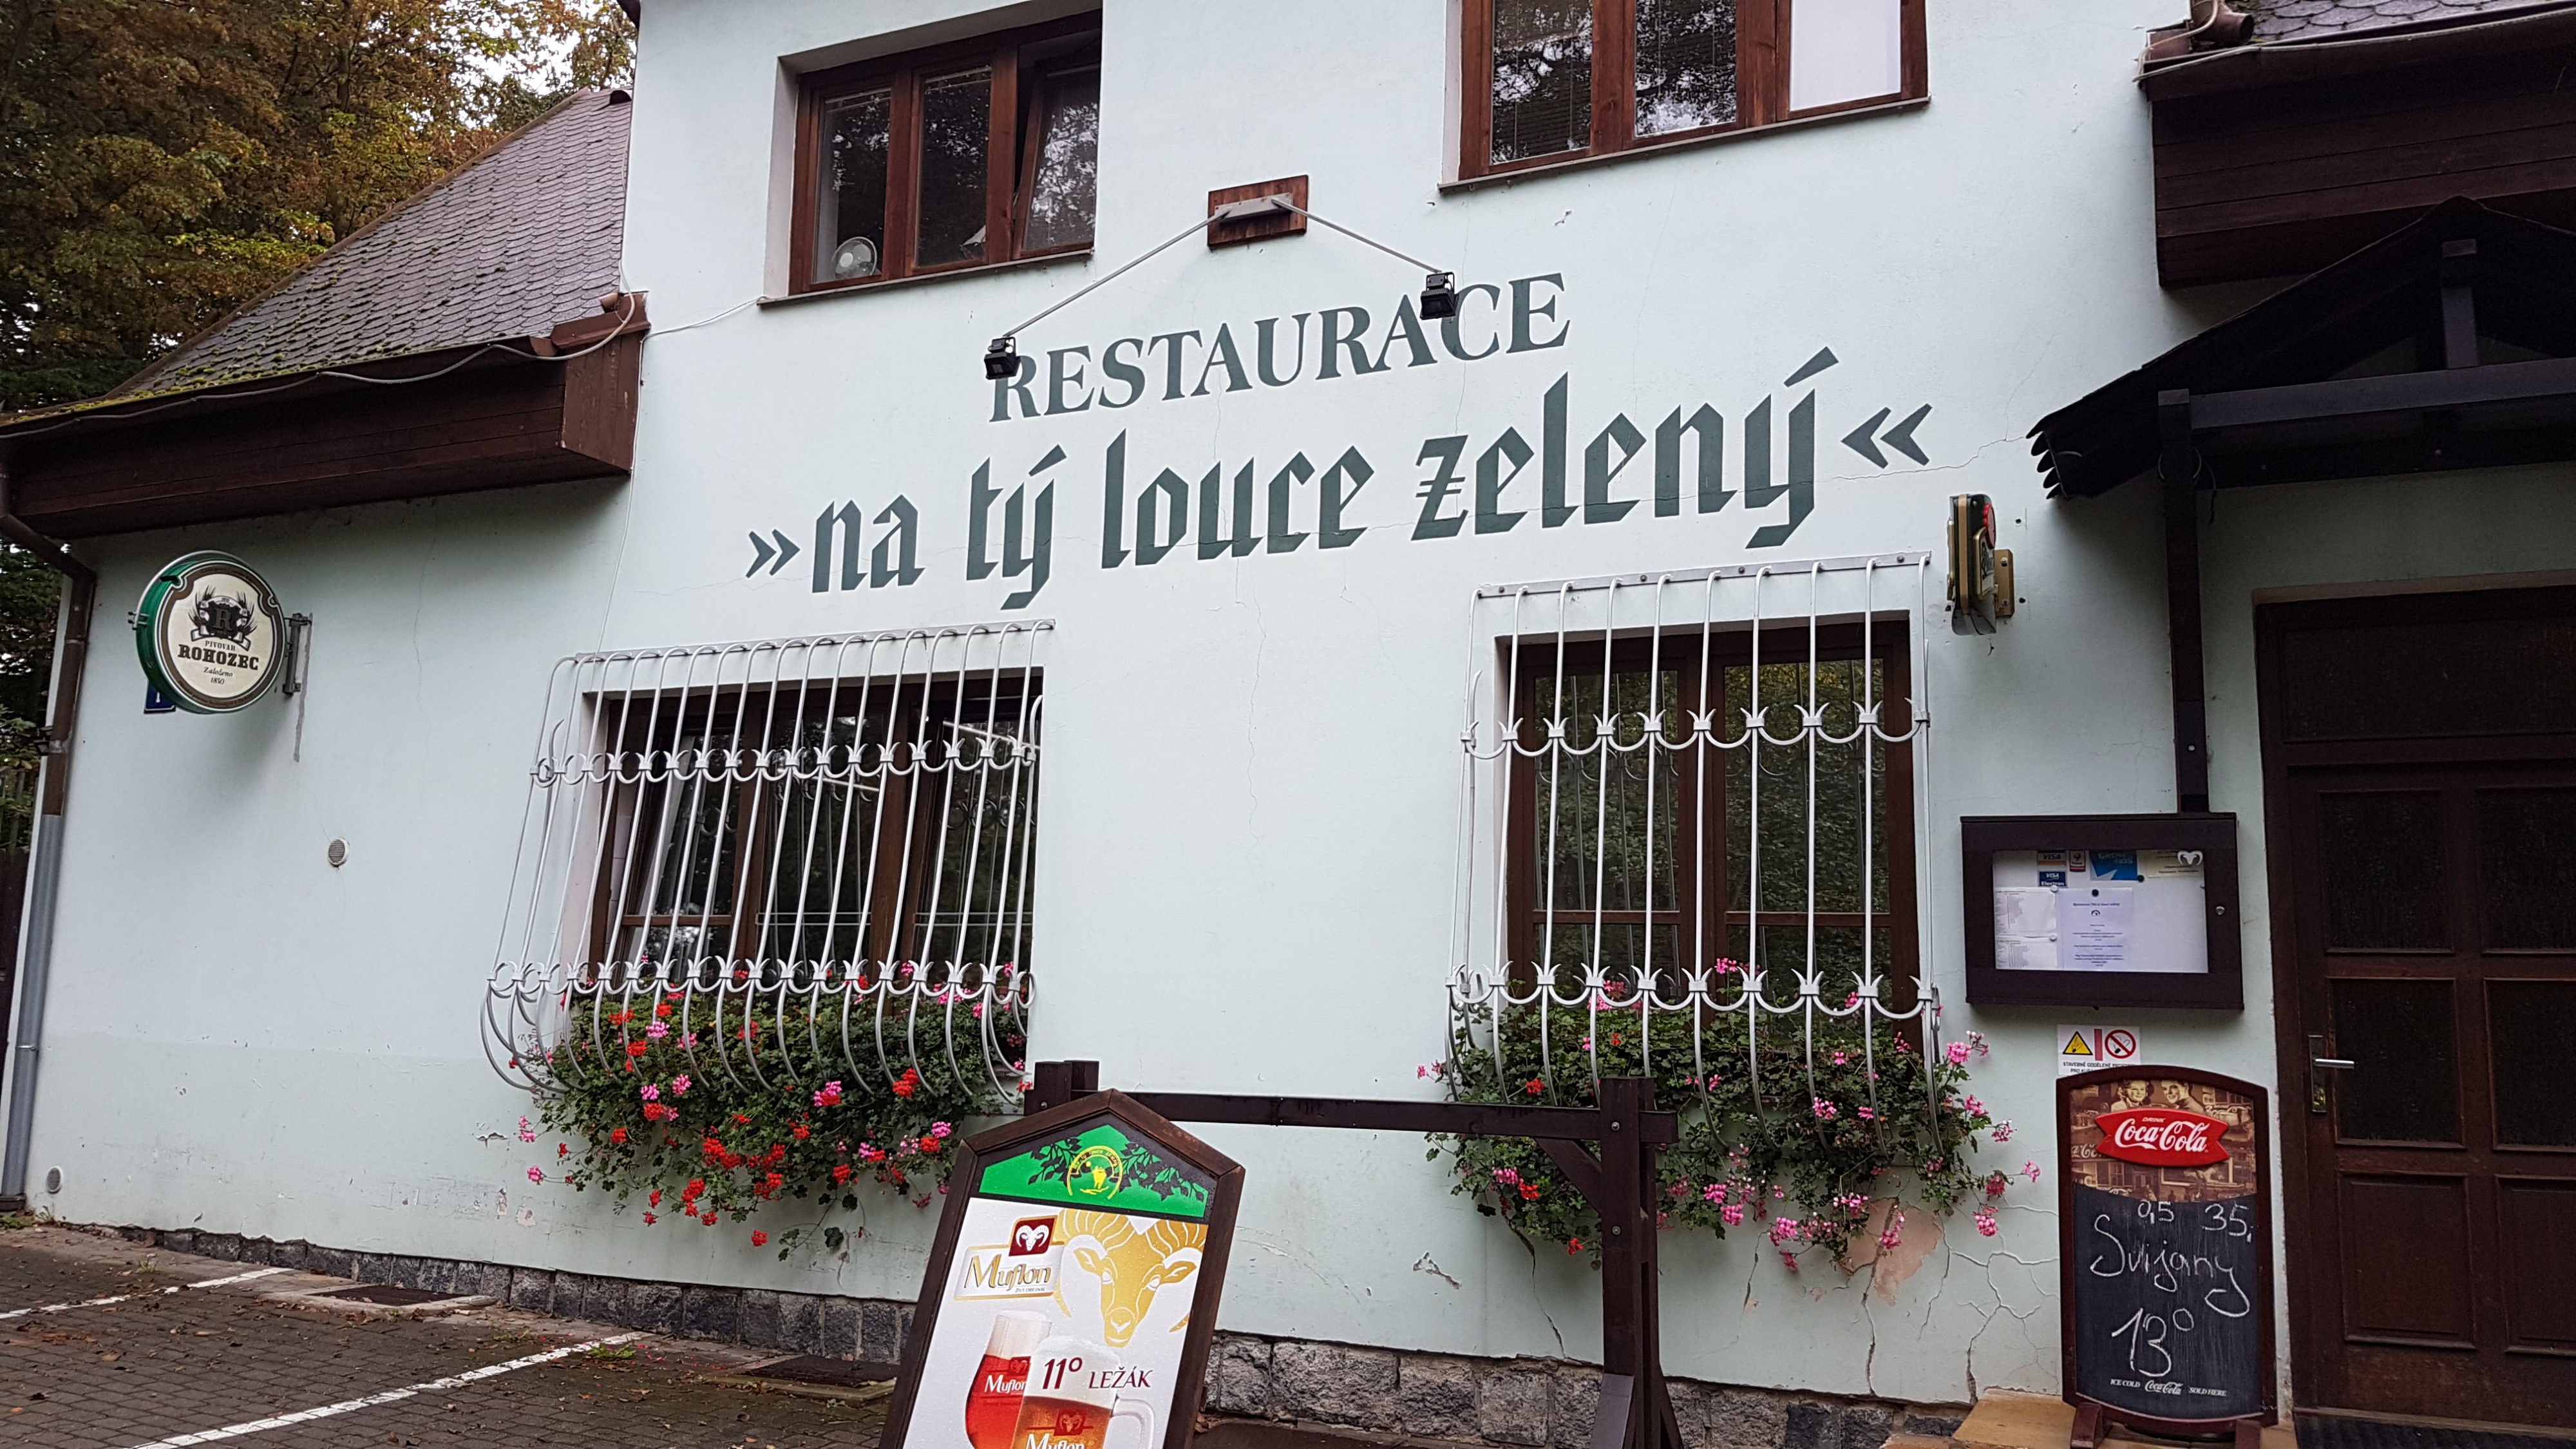 Restaurace Na Tý louce zelený (Restaurace a pohostinství) • Mapy.cz